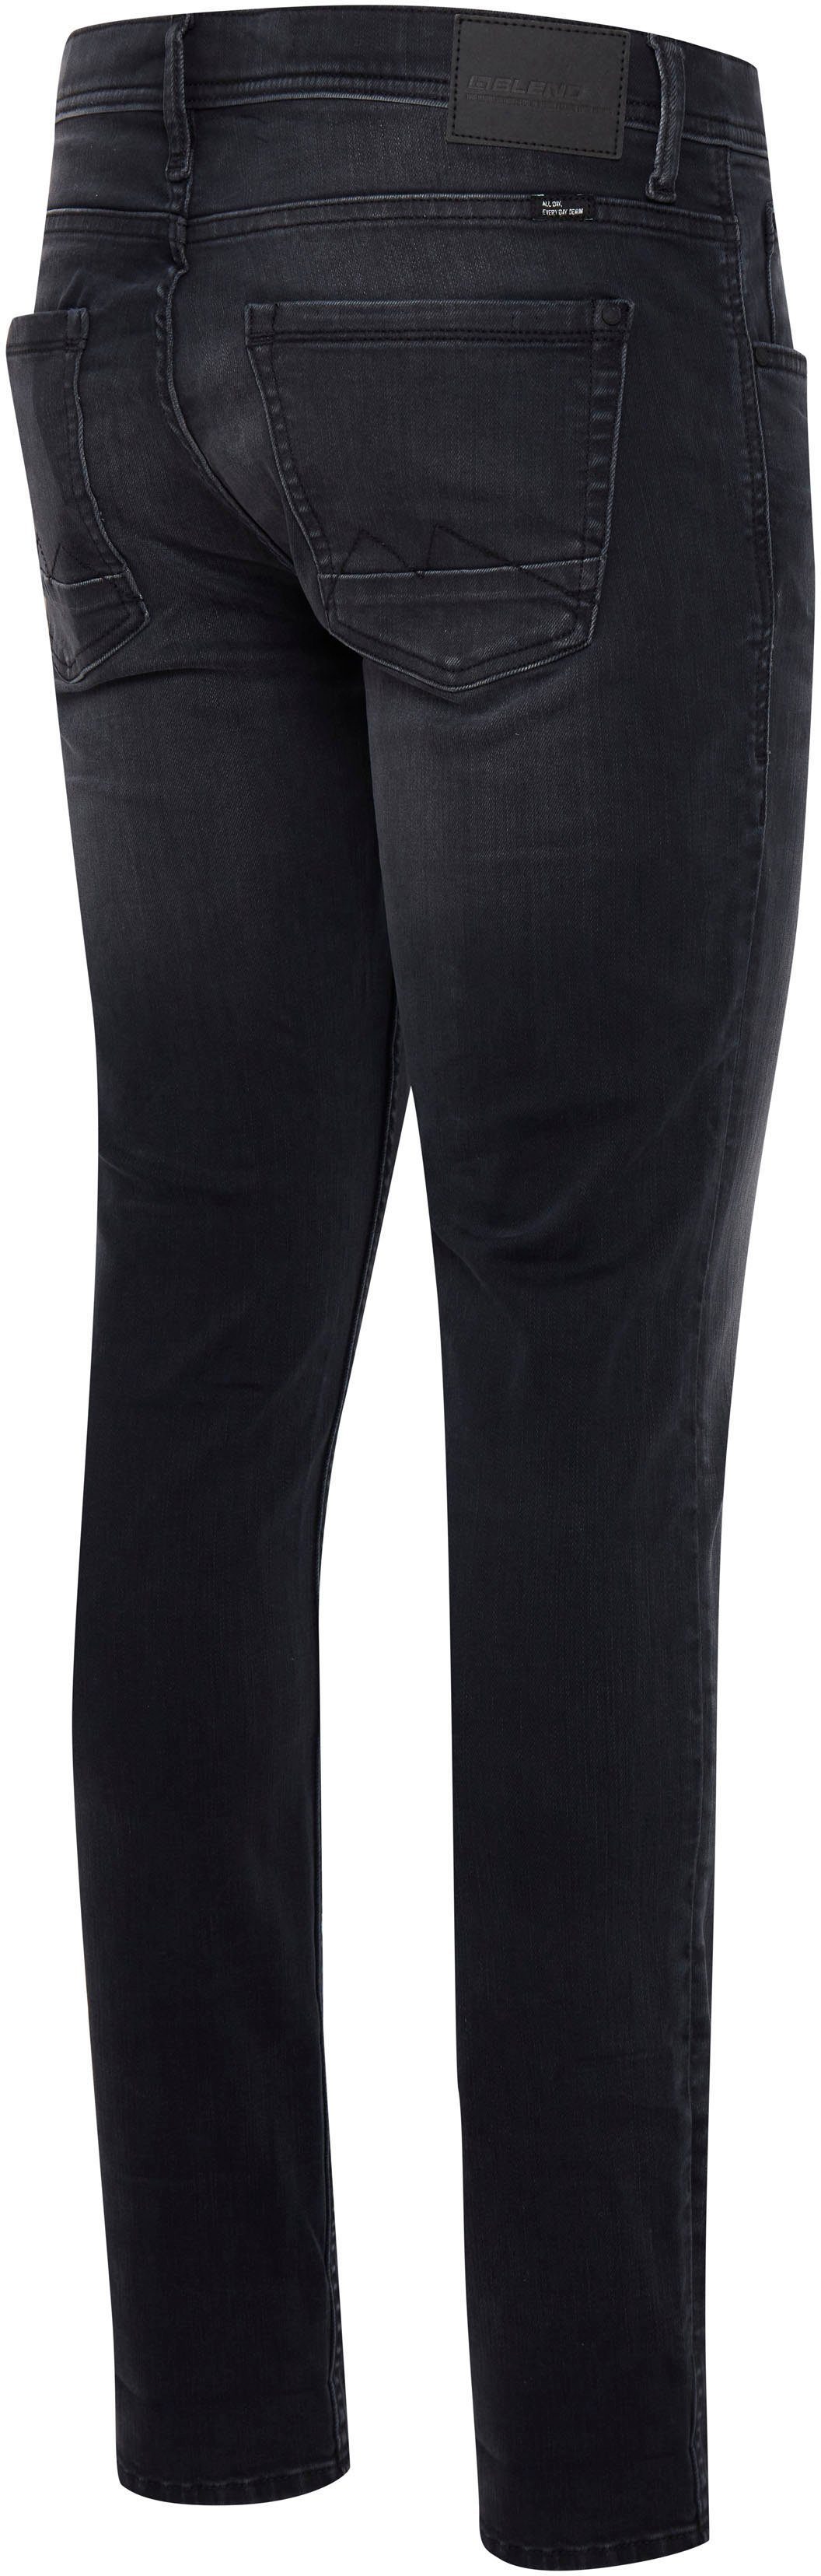 Slim-fit-Jeans Jet washed Multiflex Blend black